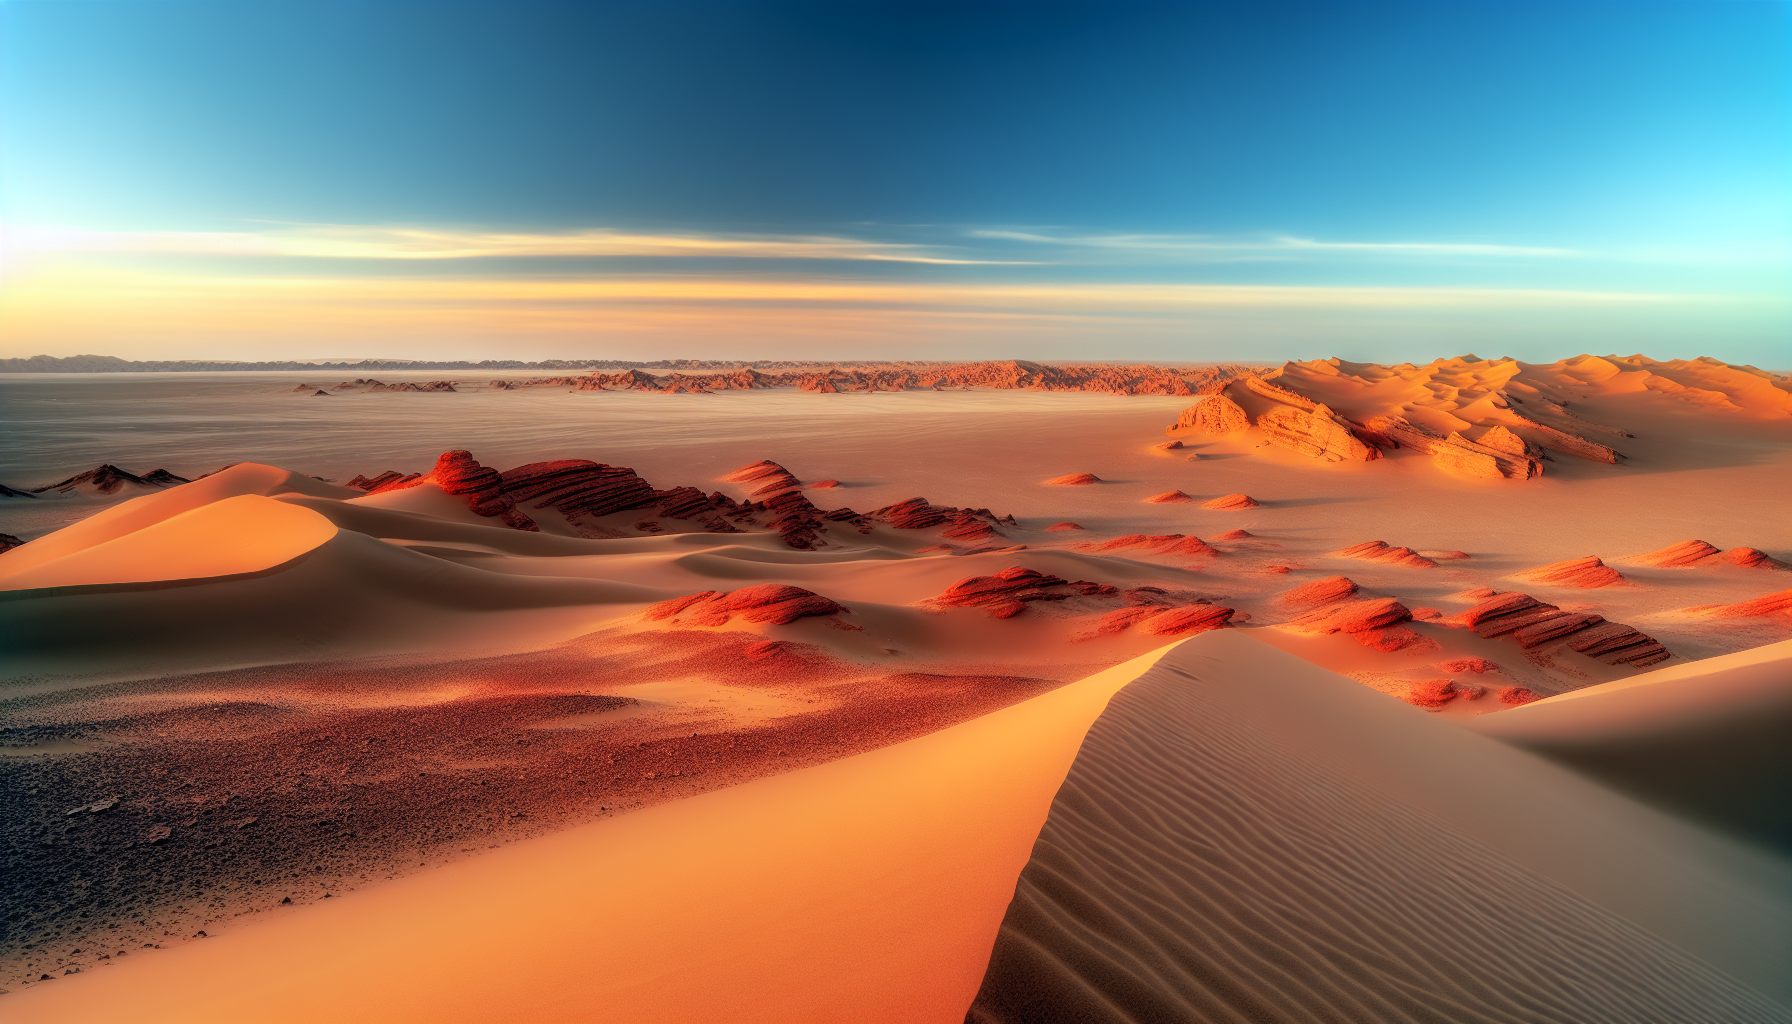 Wanderdünen und rote Sandsteinformationen in der Wüste Gobi